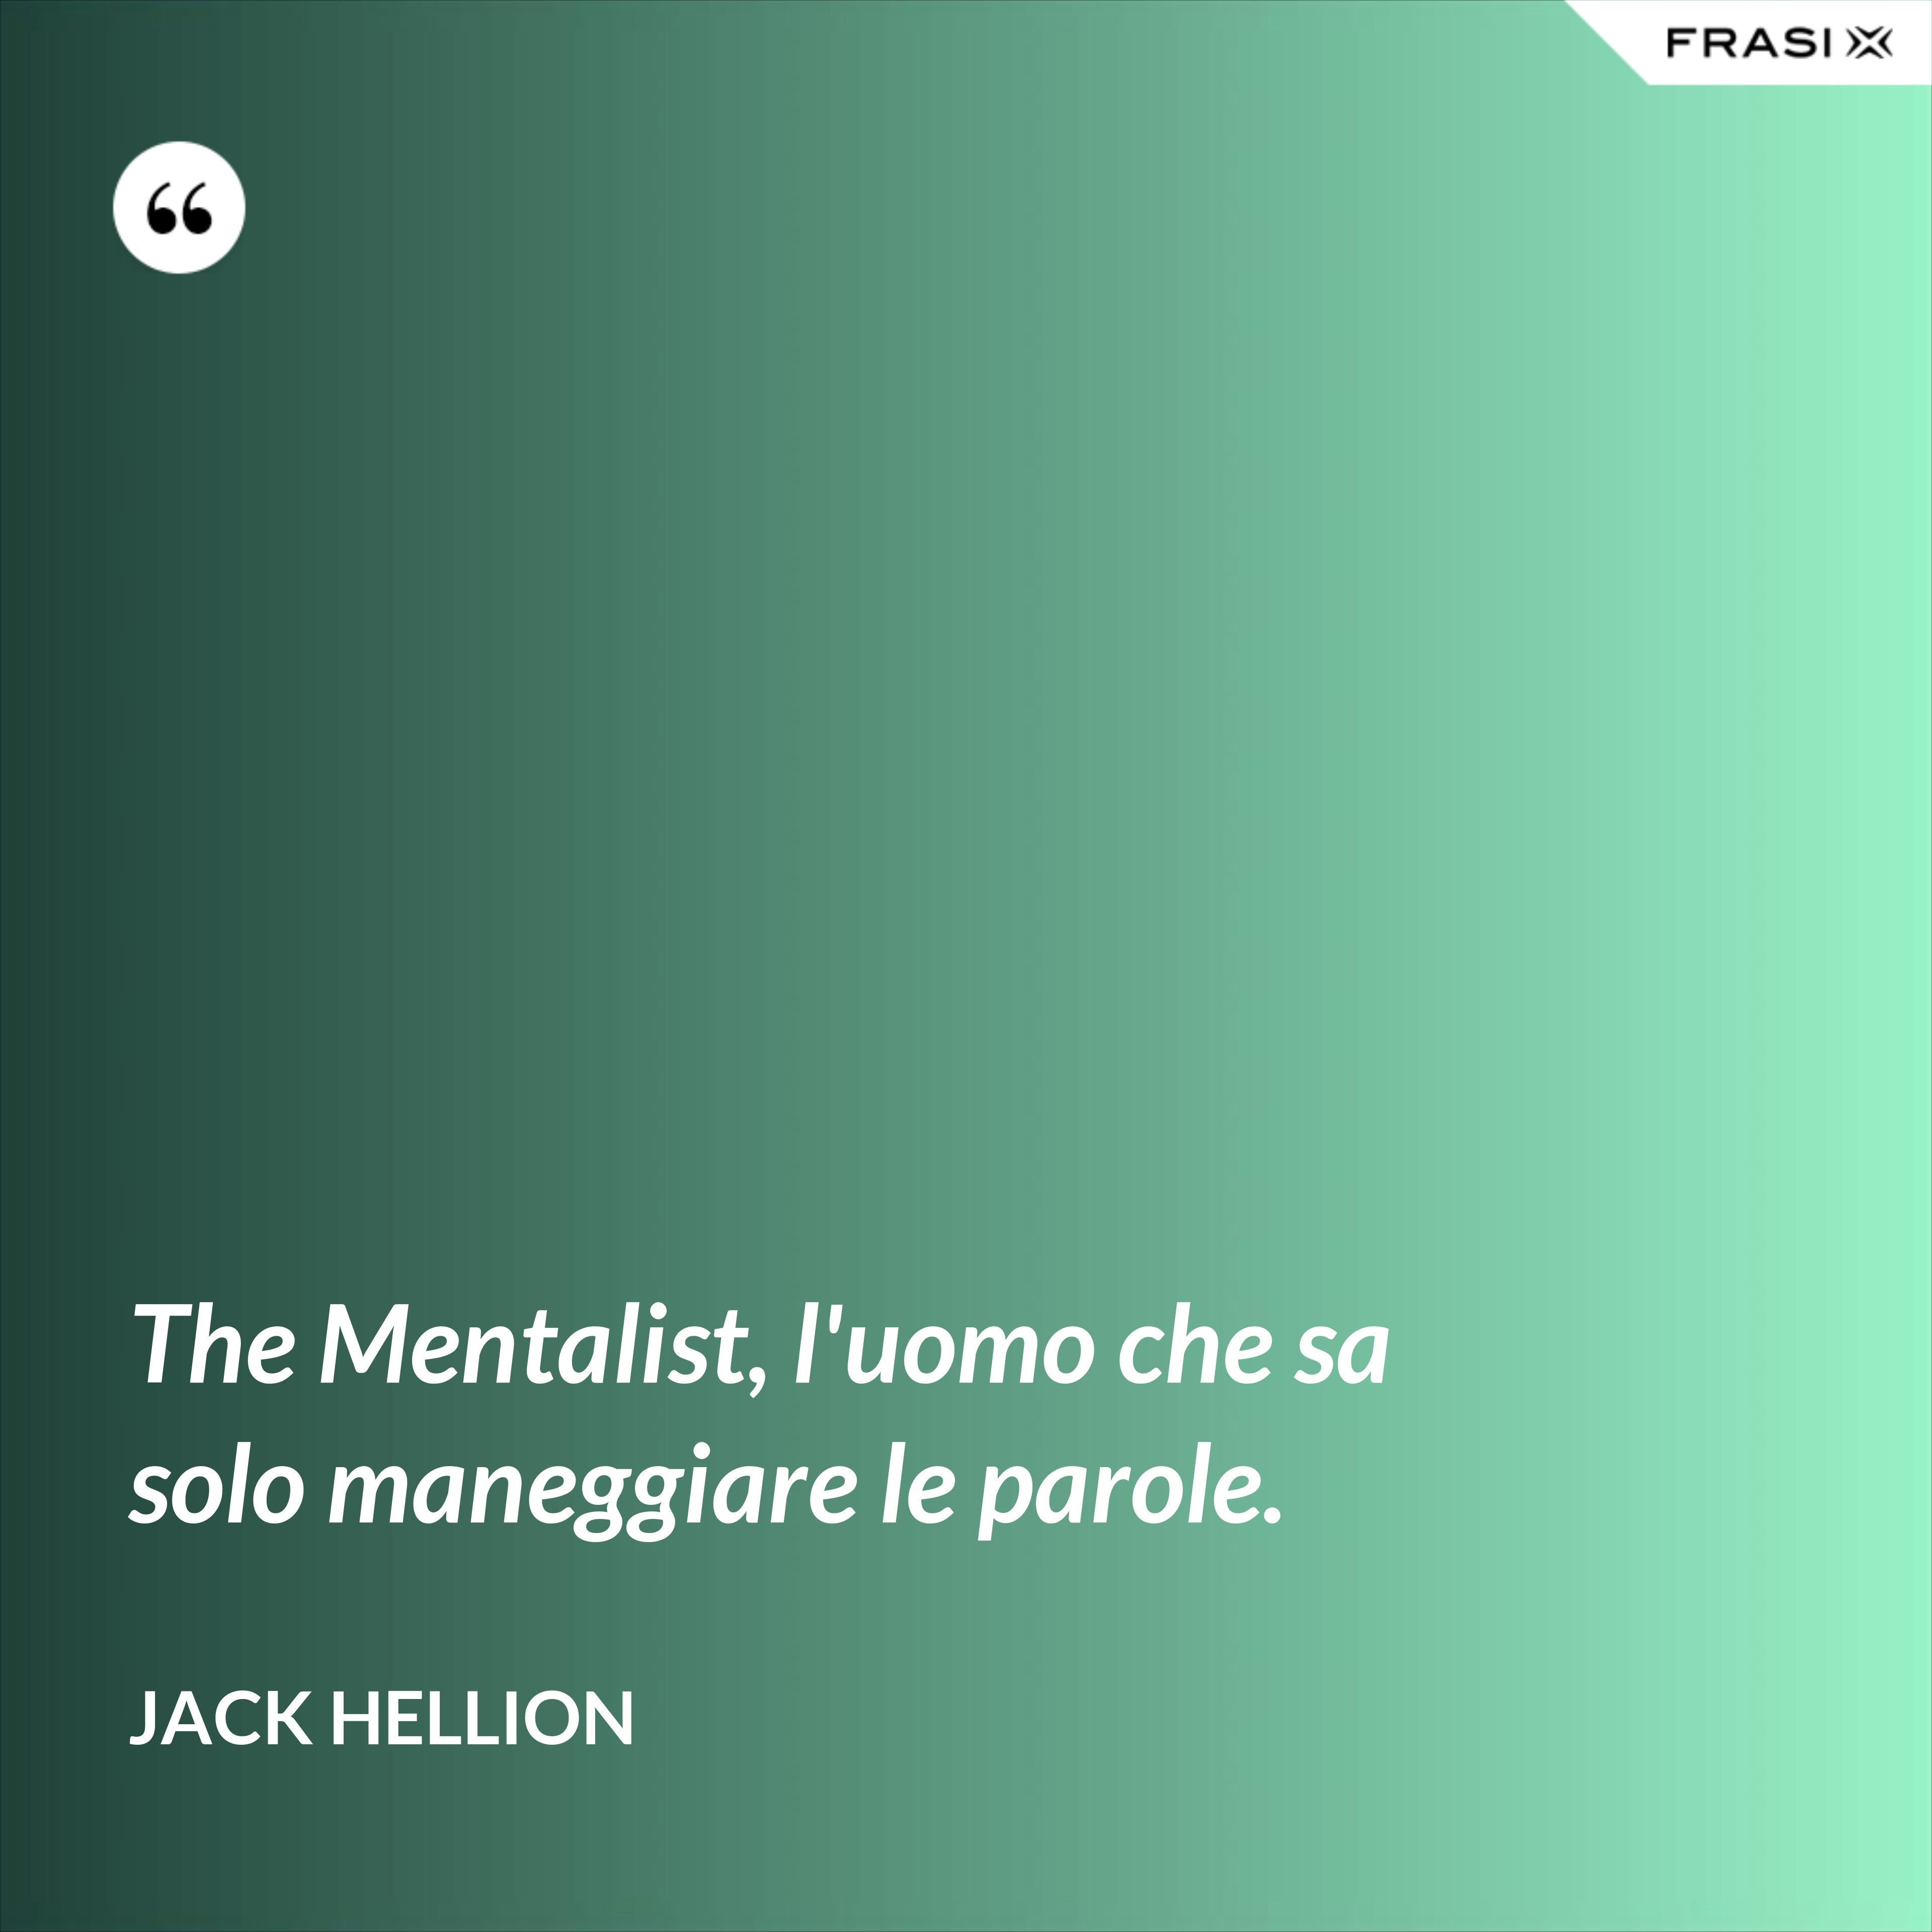 The Mentalist, l'uomo che sa solo maneggiare le parole. - Jack Hellion